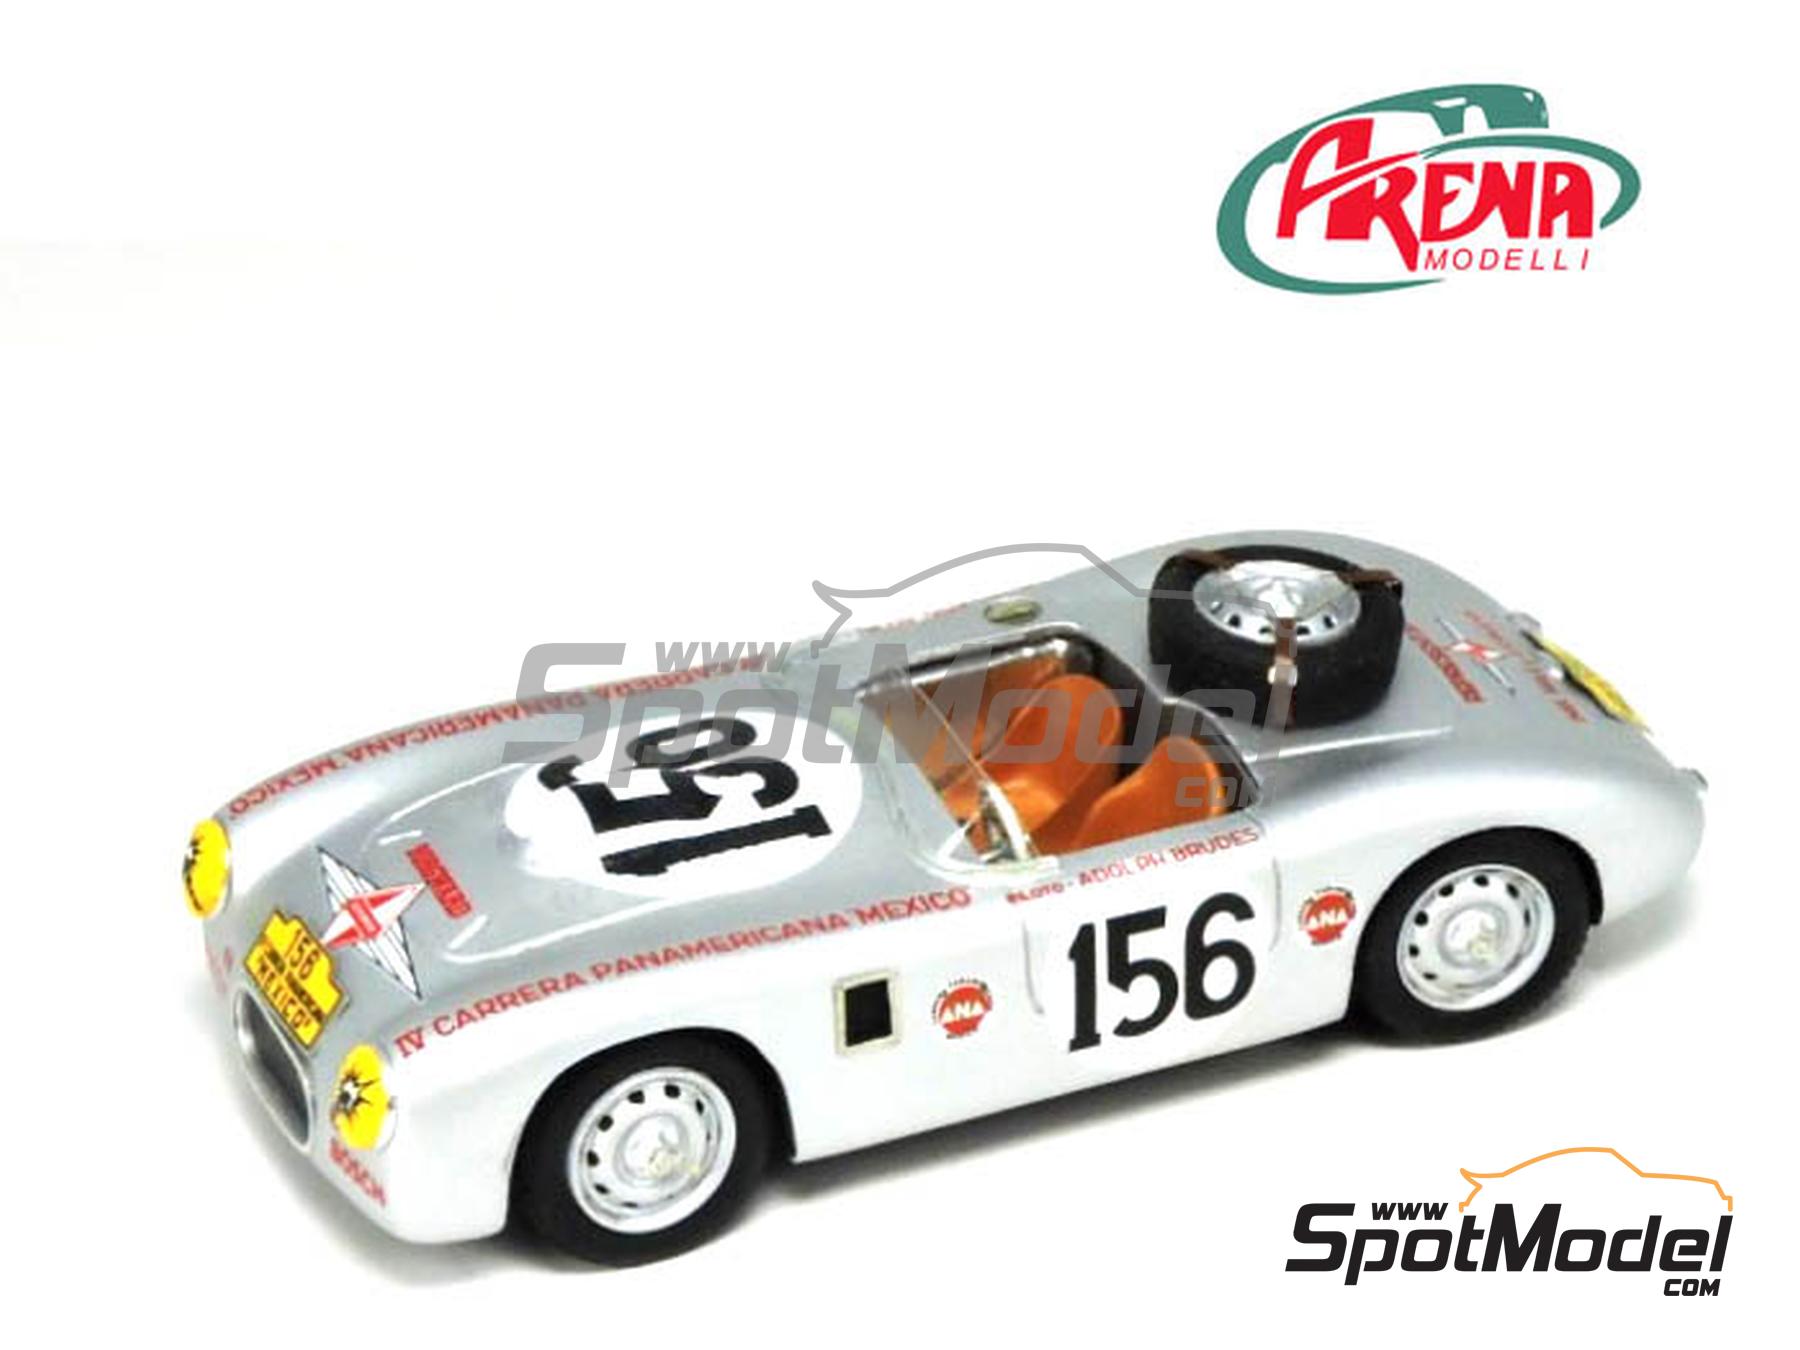 Arena Modelli ARE1074: Car scale model kit 1/43 scale - Borgward Hansa 1500  RS #155, 156 - Carrera Panamericana 1953 (ref. ARE1074) | SpotModel